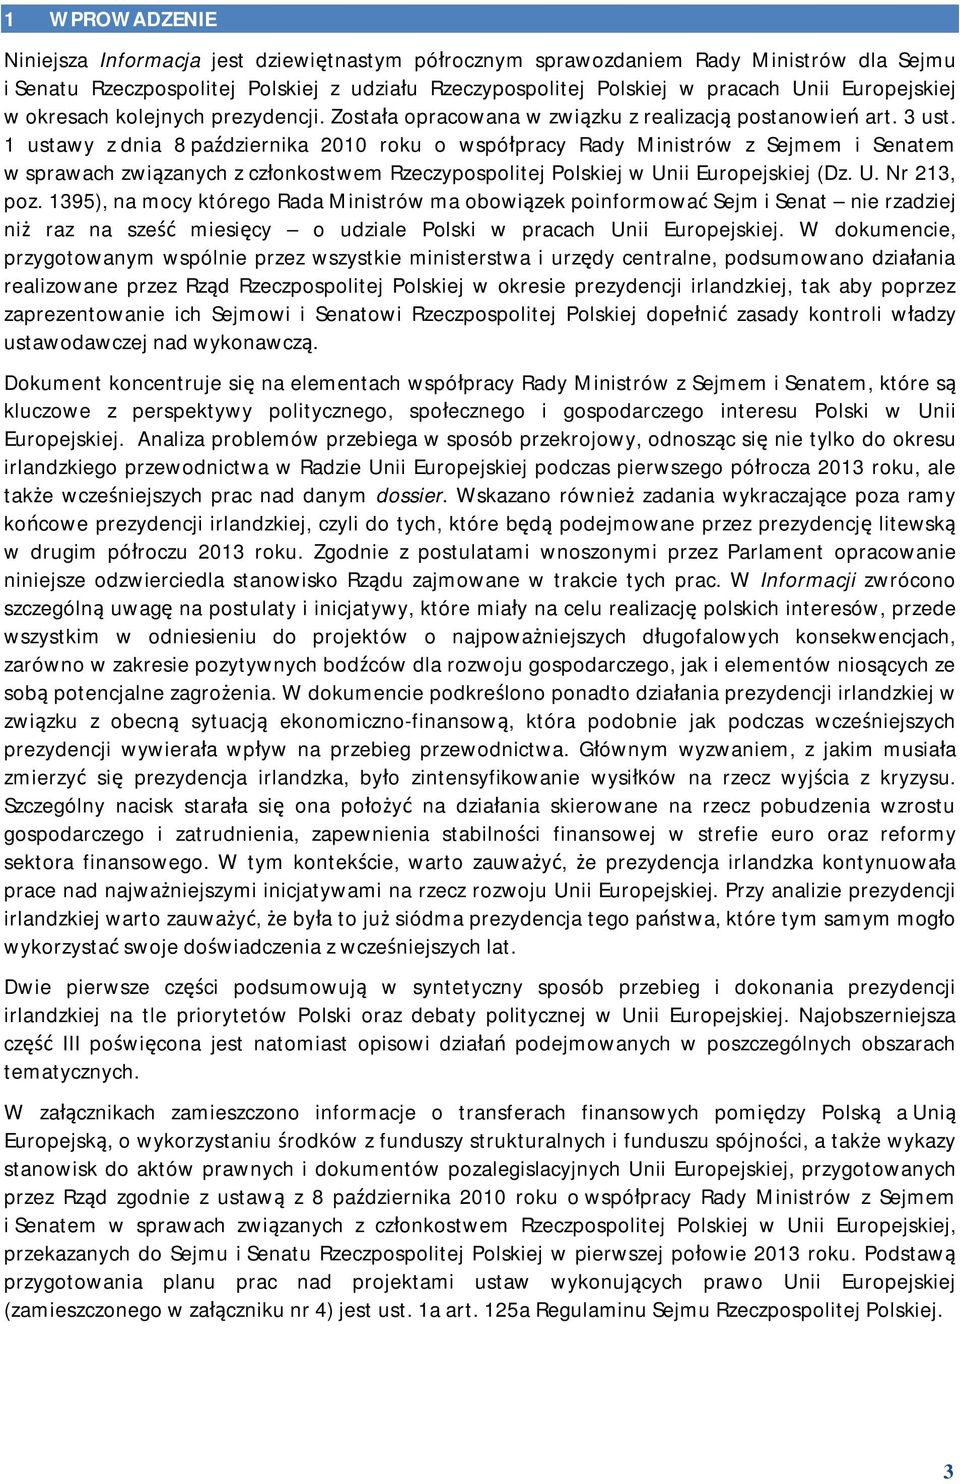 1 ustawy z dnia 8 października 2010 roku o współpracy Rady Ministrów z Sejmem i Senatem w sprawach związanych z członkostwem Rzeczypospolitej Polskiej w Unii Europejskiej (Dz. U. Nr 213, poz.